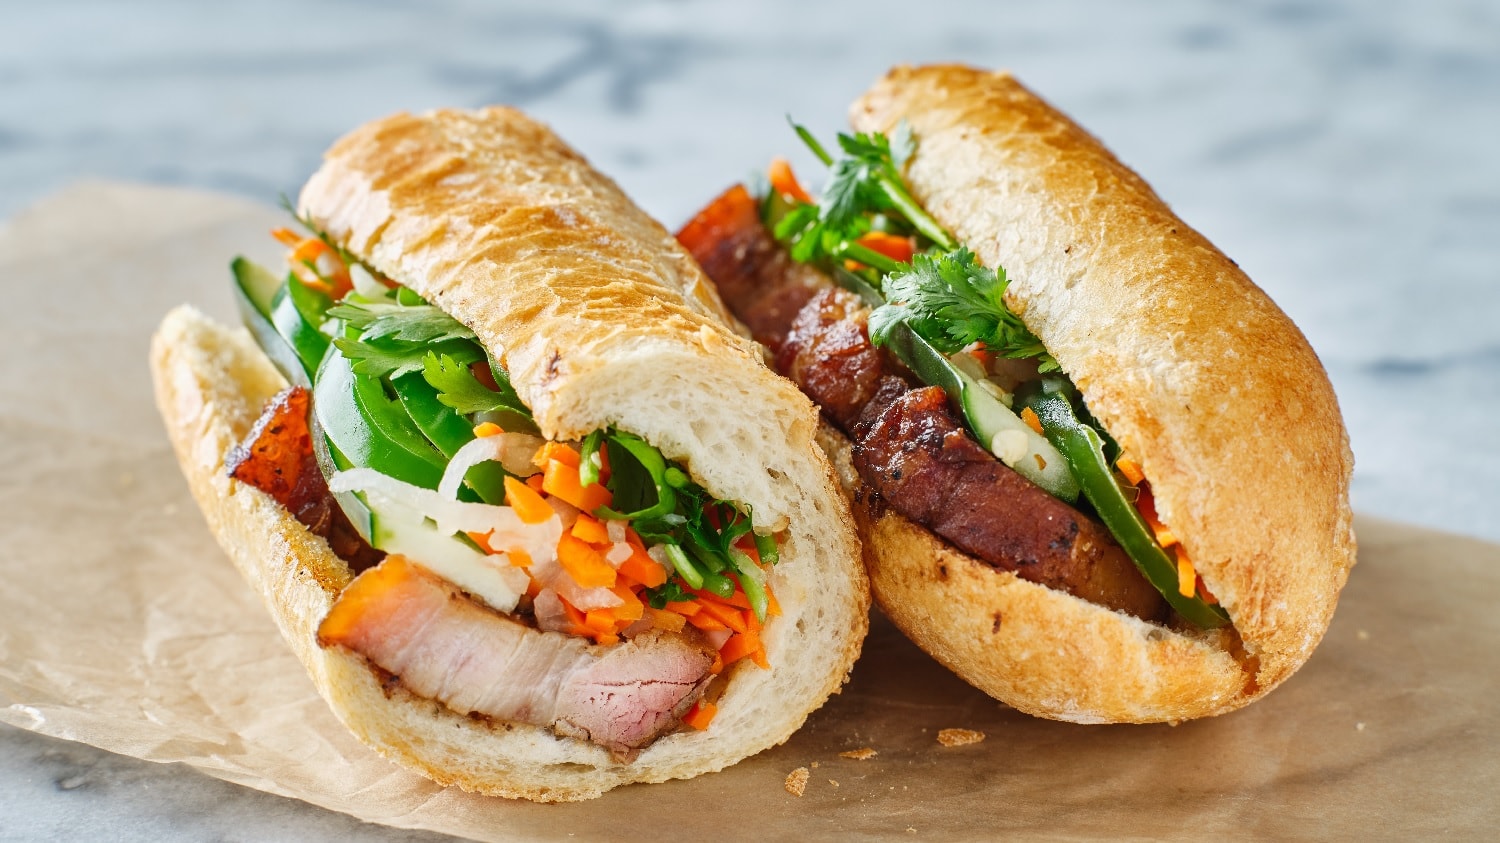 Zwei Banh-mi Sandwiches auf einem Marmortisch mit etwas Backpapier. Das Sandwich ist angeschnitten, sodass man den Inhalt (Karotten, Paprika, Schweinefleisch und Koriander) sehen kann.